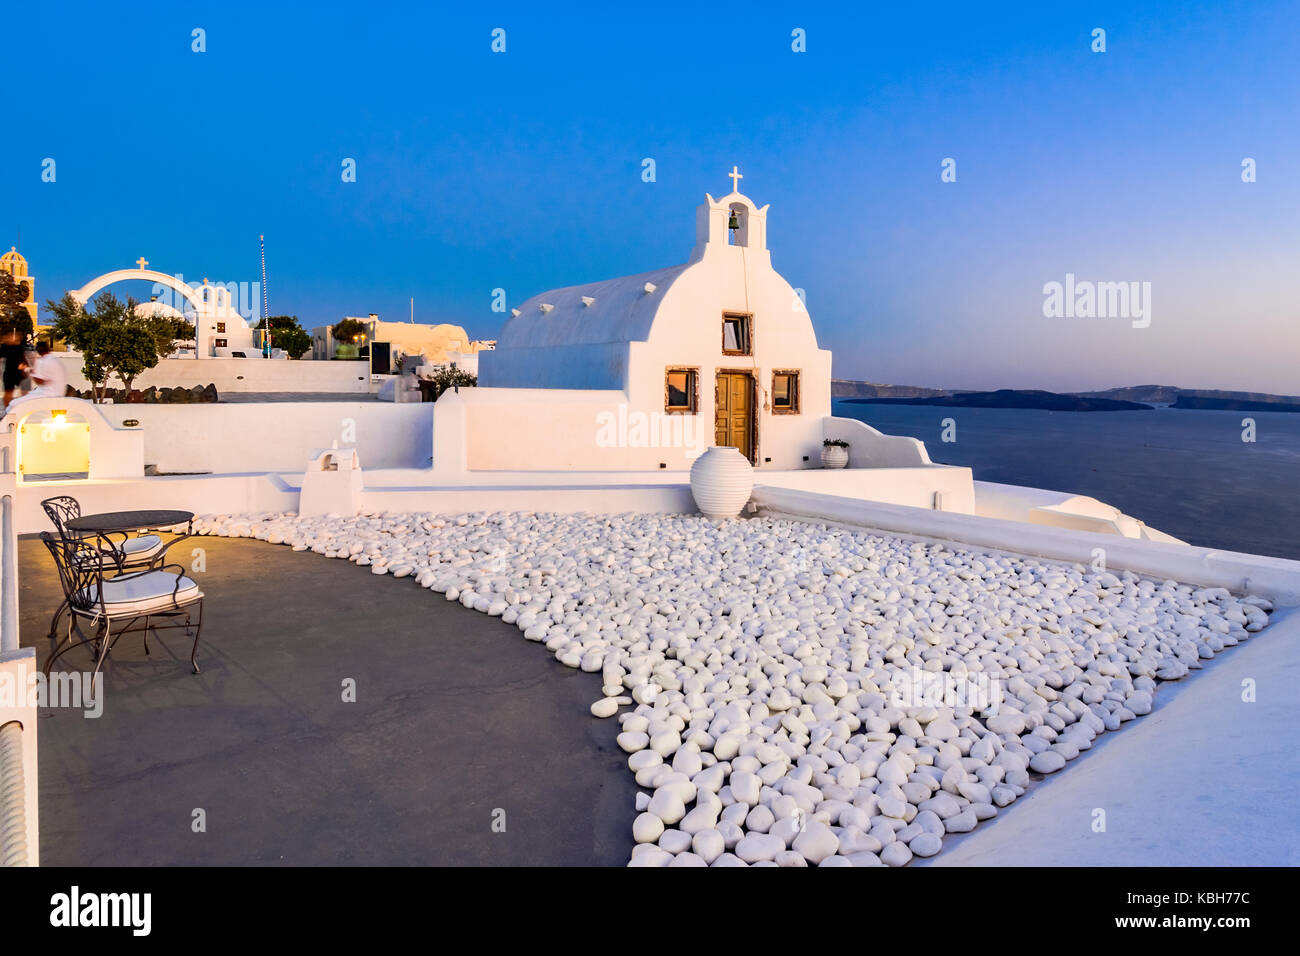 La cittadina di Oia - Santorini Island, Grecia al tramonto. tradizionali e famose chiese bianco sopra la caldera, il mare Egeo. Foto Stock